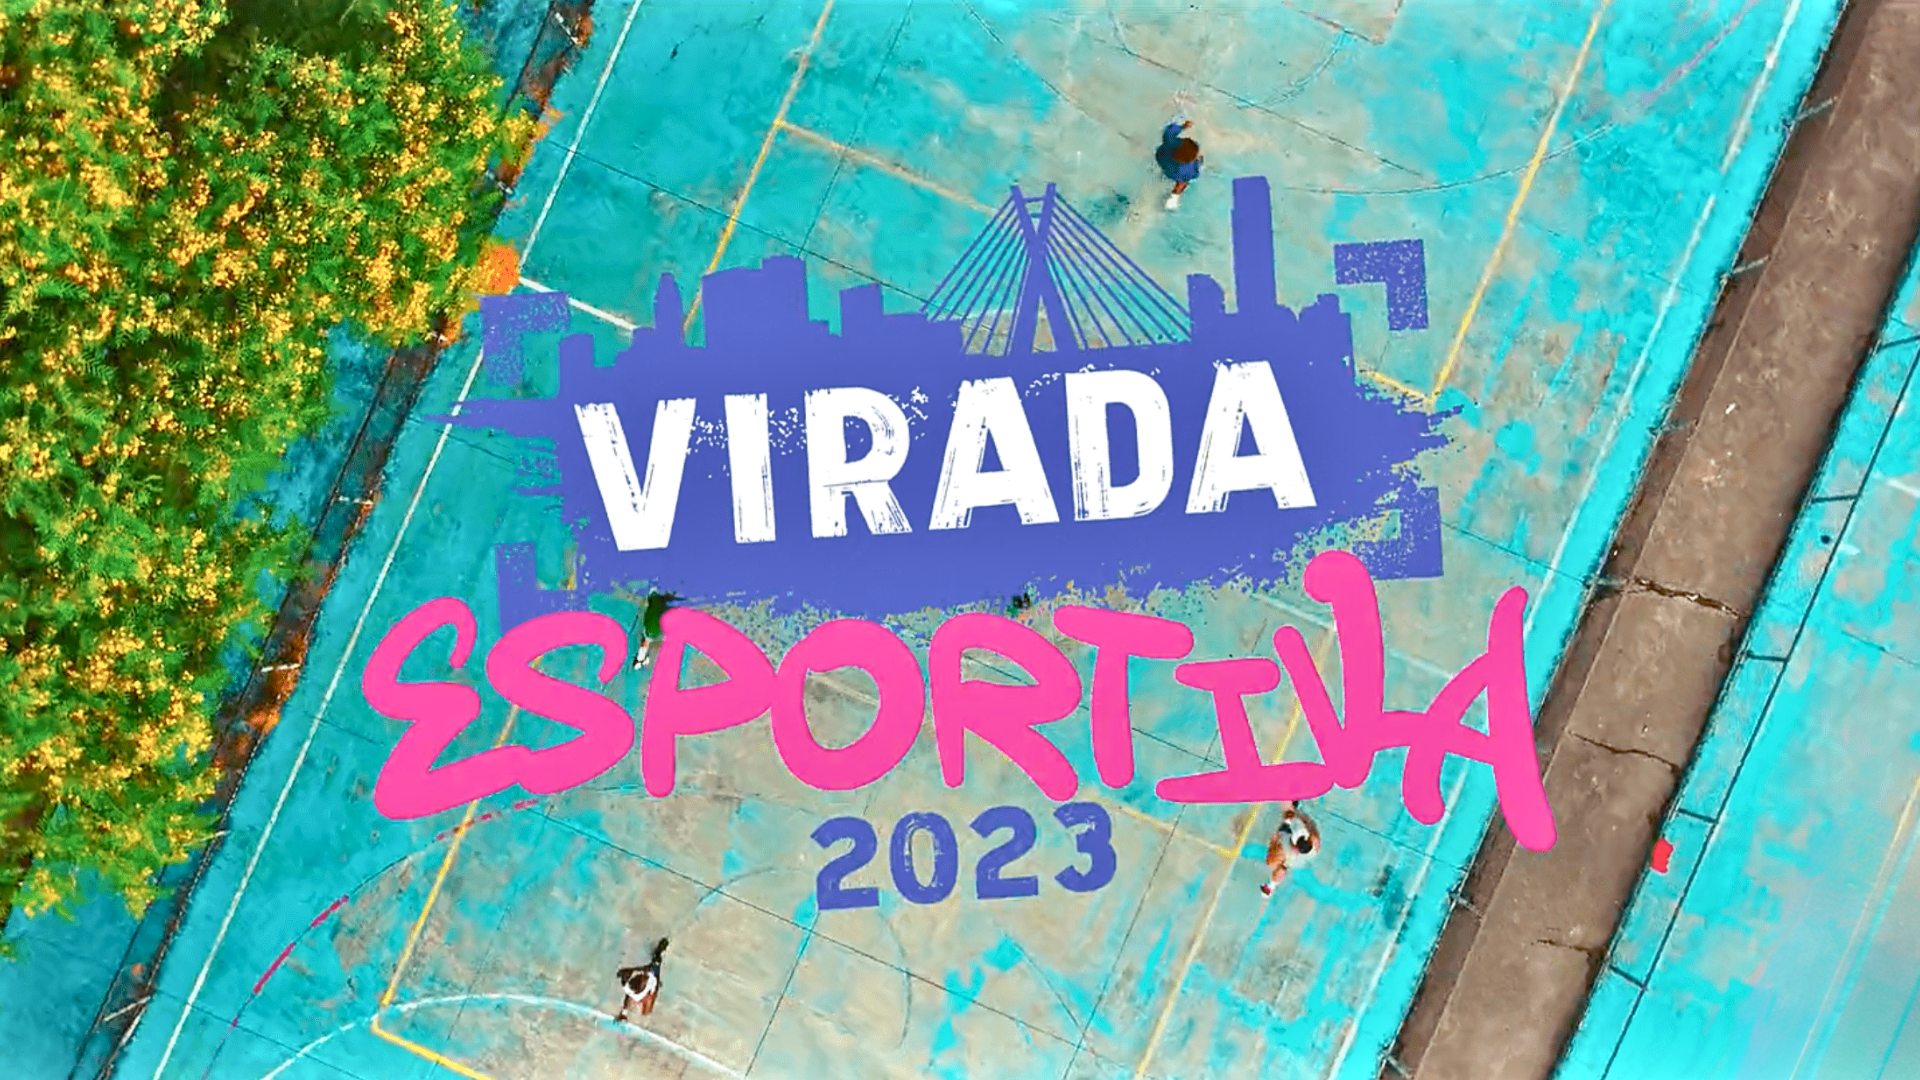 Agência Momentum assina campanha da Virada Esportiva 2023 em SP